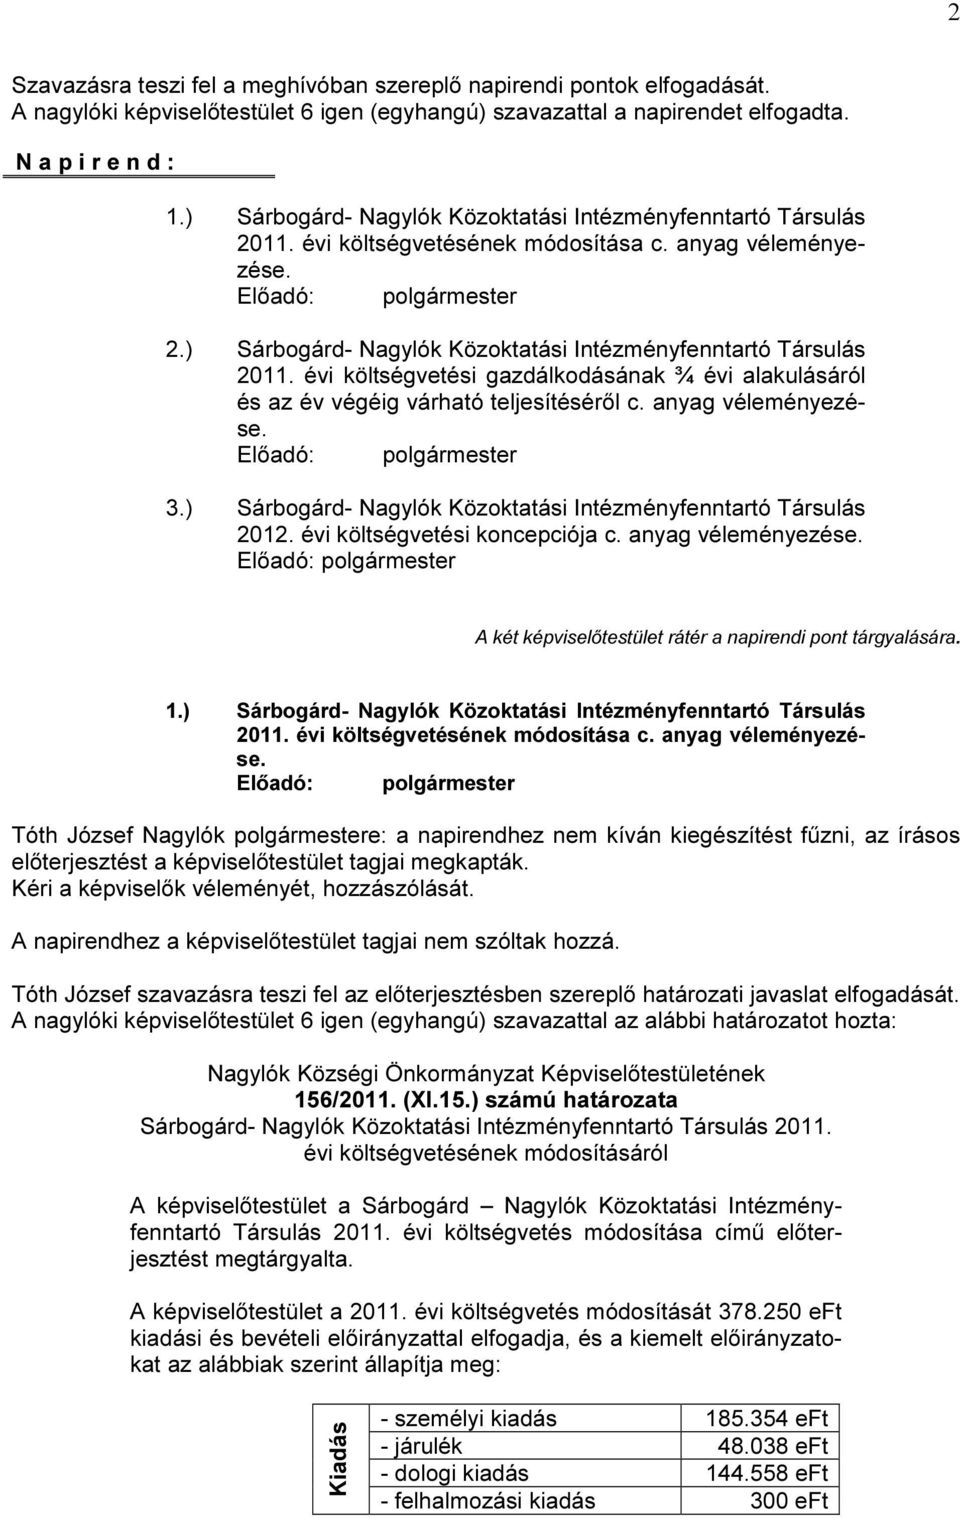 anyag véleményezése. 3.) Sárbogárd- Nagylók Közoktatási Intézményfenntartó Társulás 2012. évi költségvetési koncepciója c. anyag véleményezése. A két testület rátér a napirendi pont tárgyalására. 1.